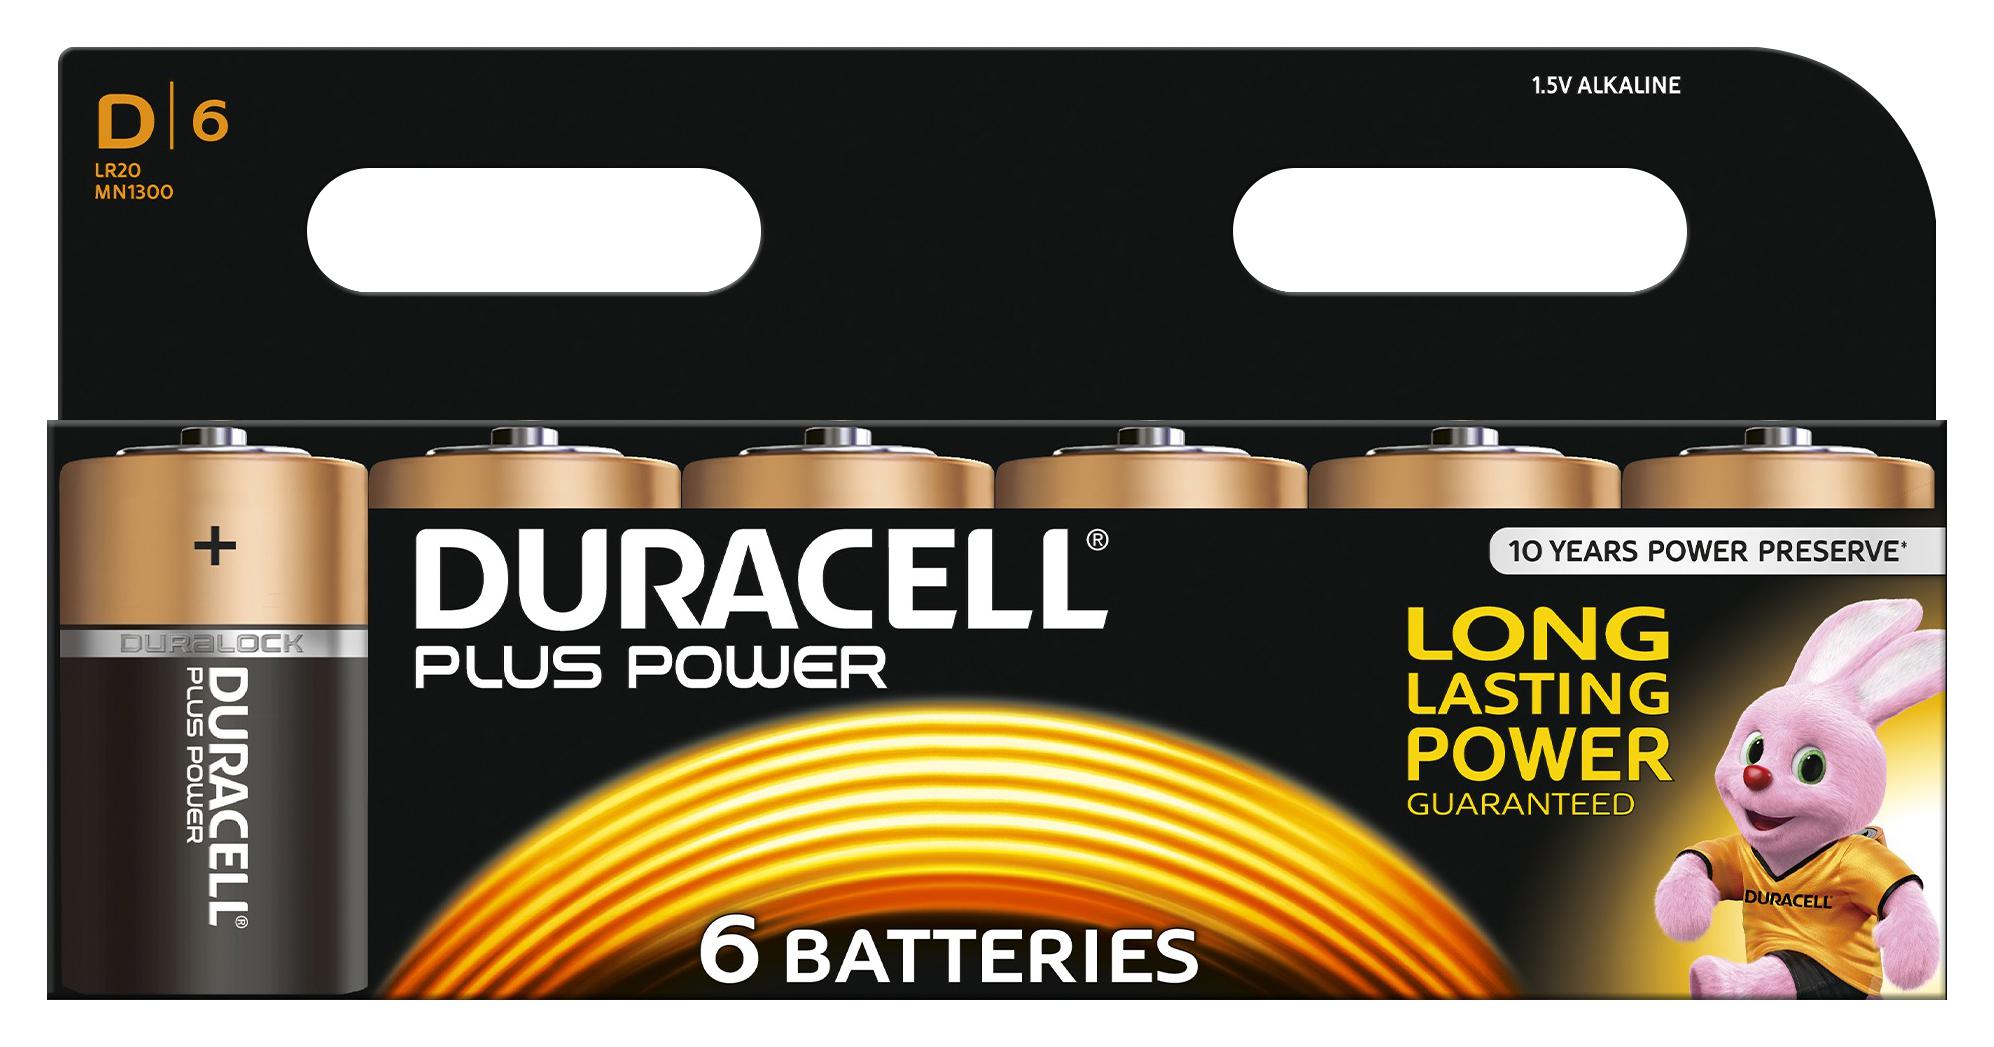 Батарейки Duracell d 6. Duracell батарейки щелочные размера d. Duracell упаковка батарейки. Аккумулятор Plus Battery +.